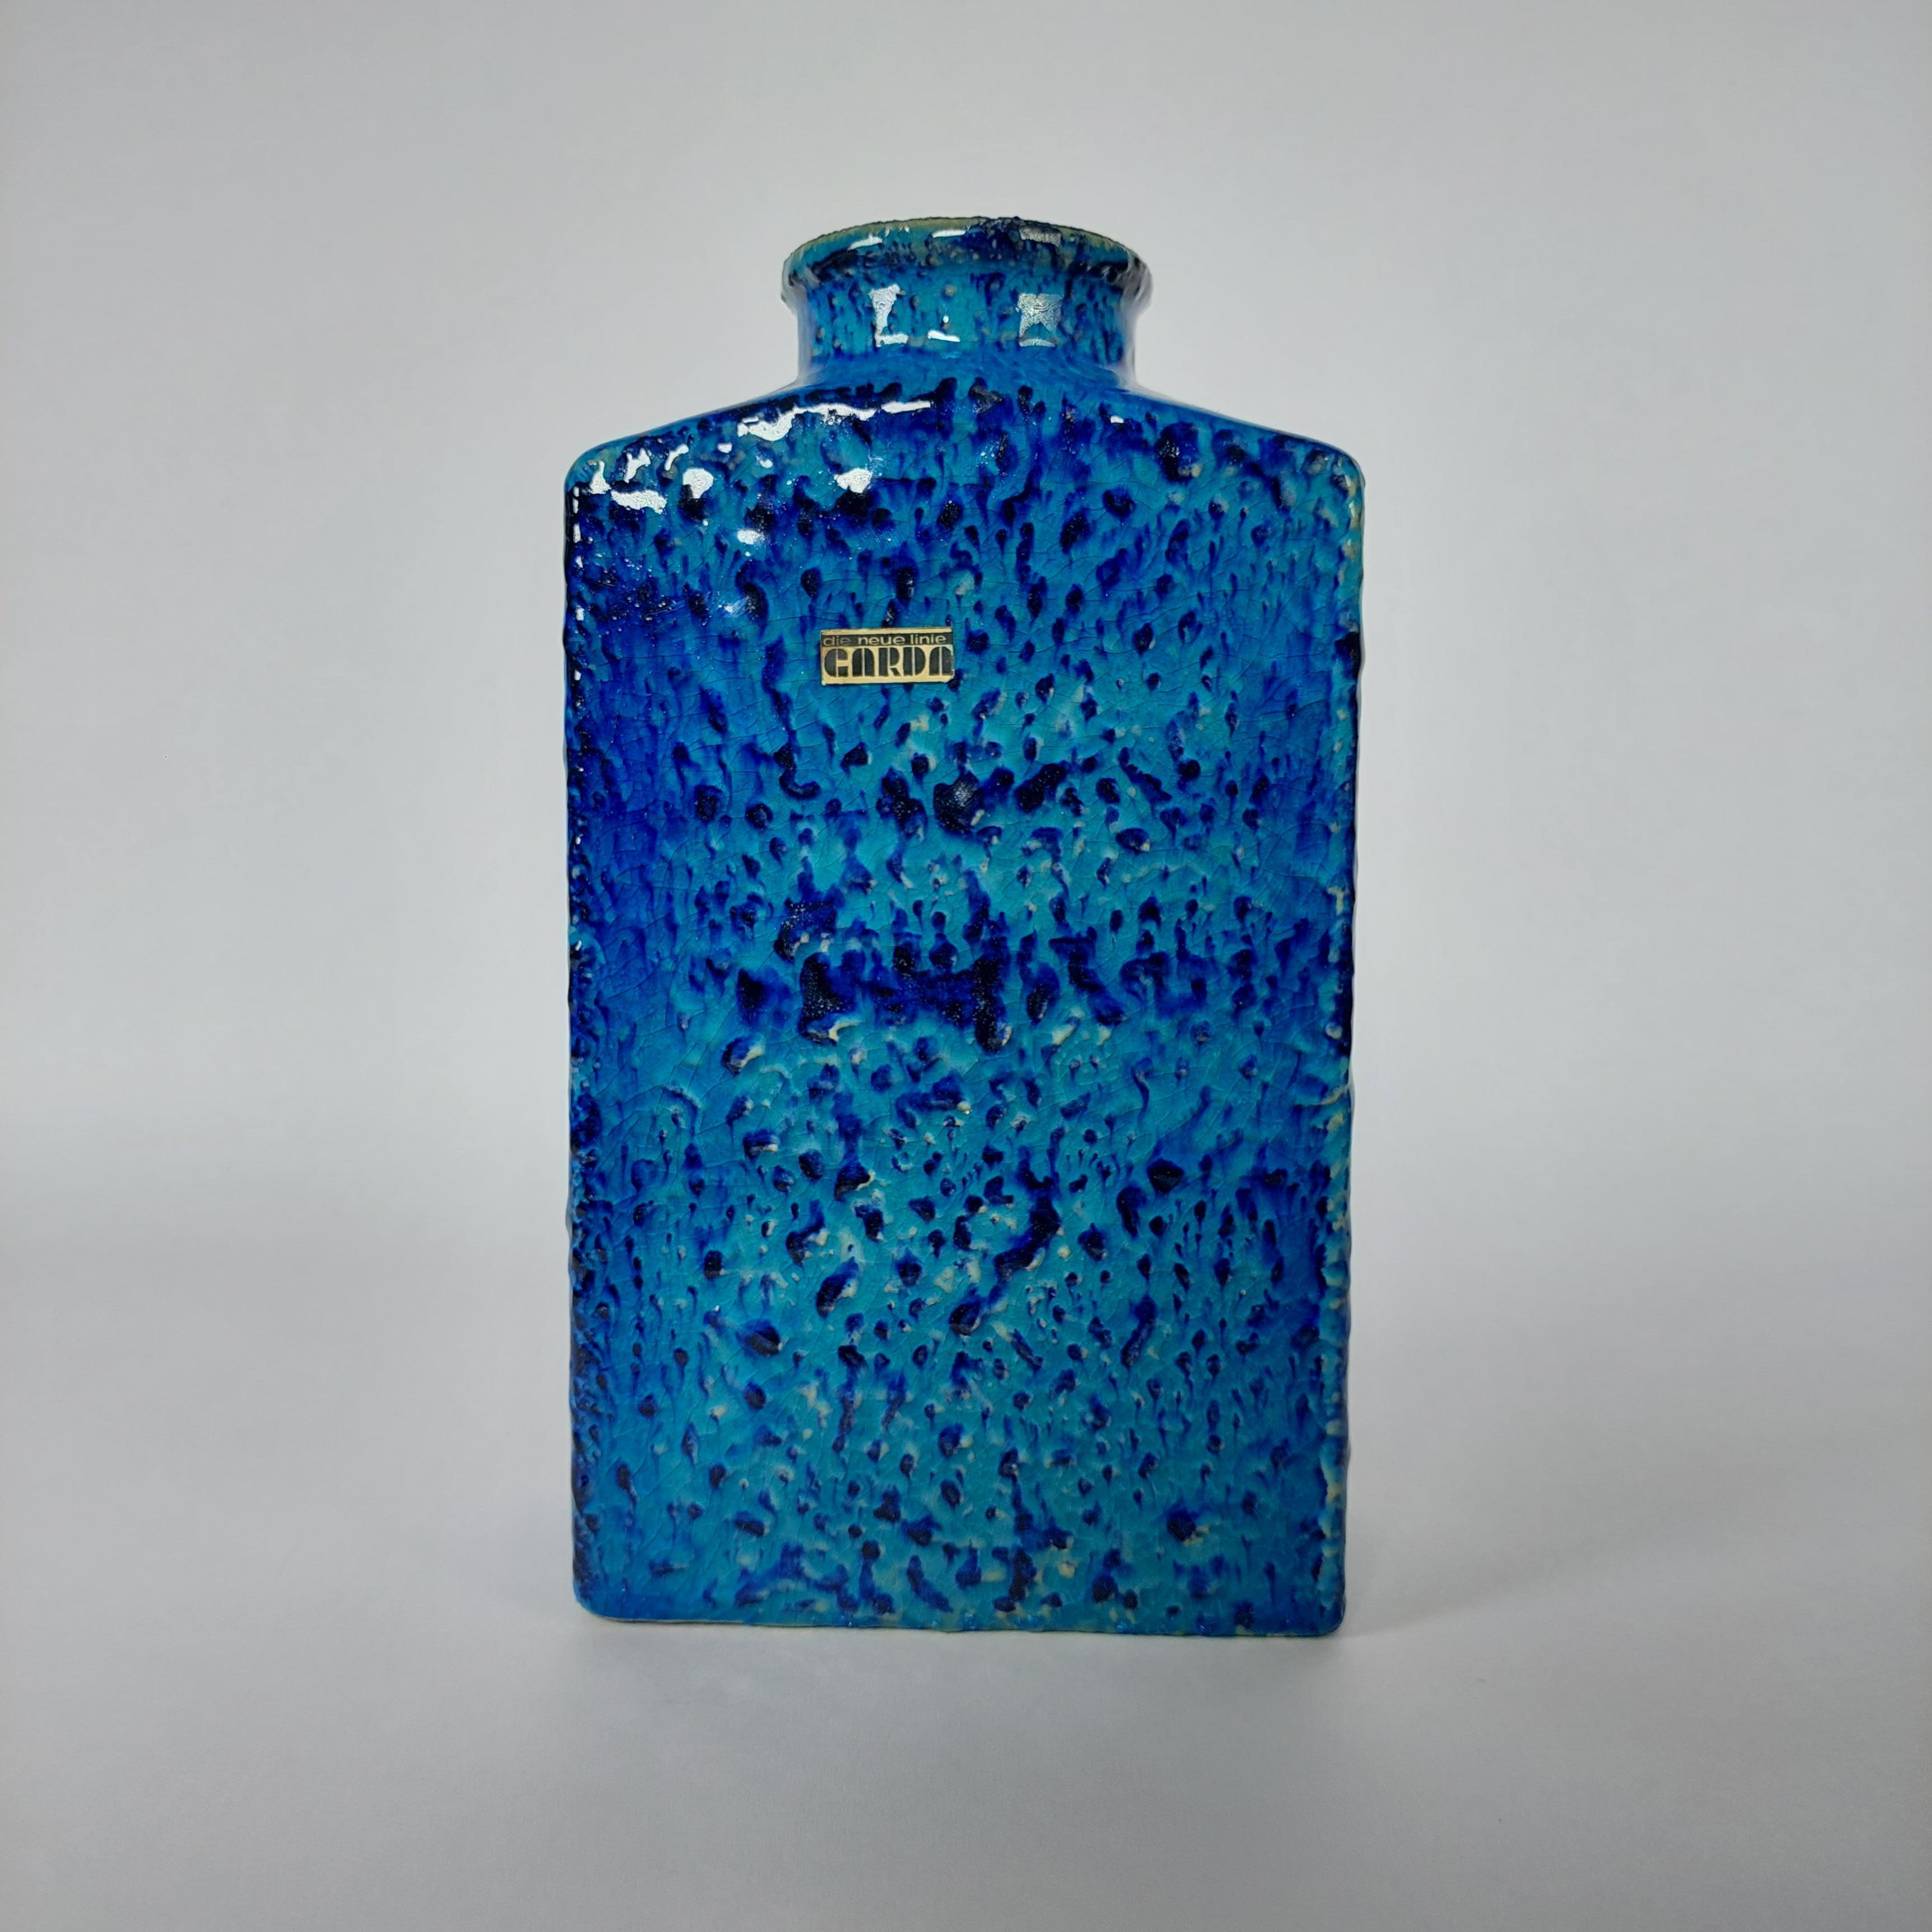 Äußerst seltene und schöne Vase von CARDA aus der Mitte des Jahrhunderts mit einer herrlichen Glasur. Original-Aufkleber intakt und in gutem Zustand.